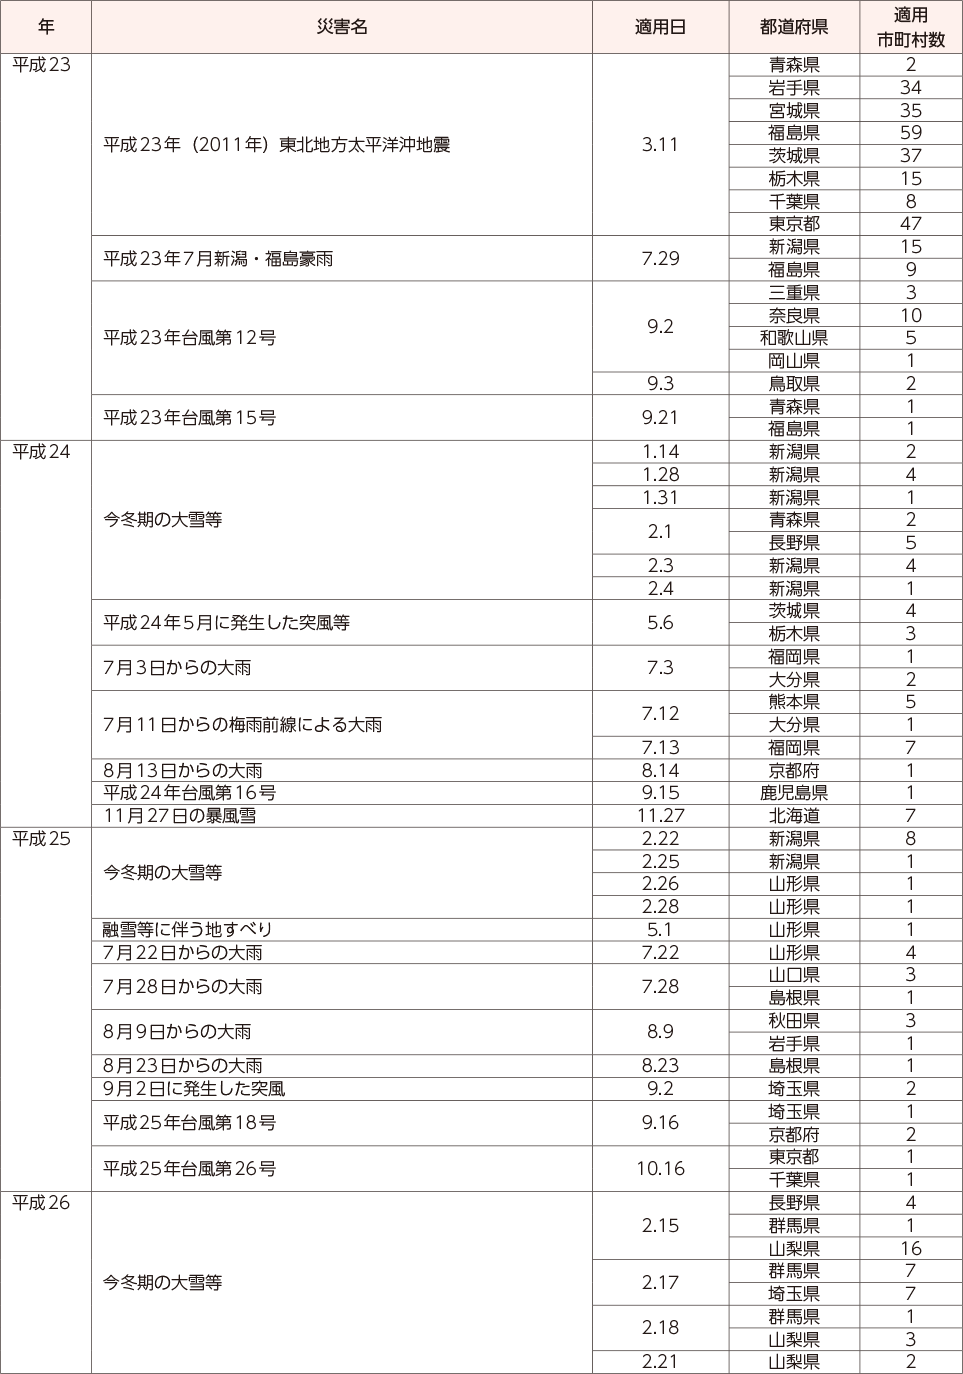 附属資料13　災害救助法の適用実績（阪神・淡路大震災以降）（3）